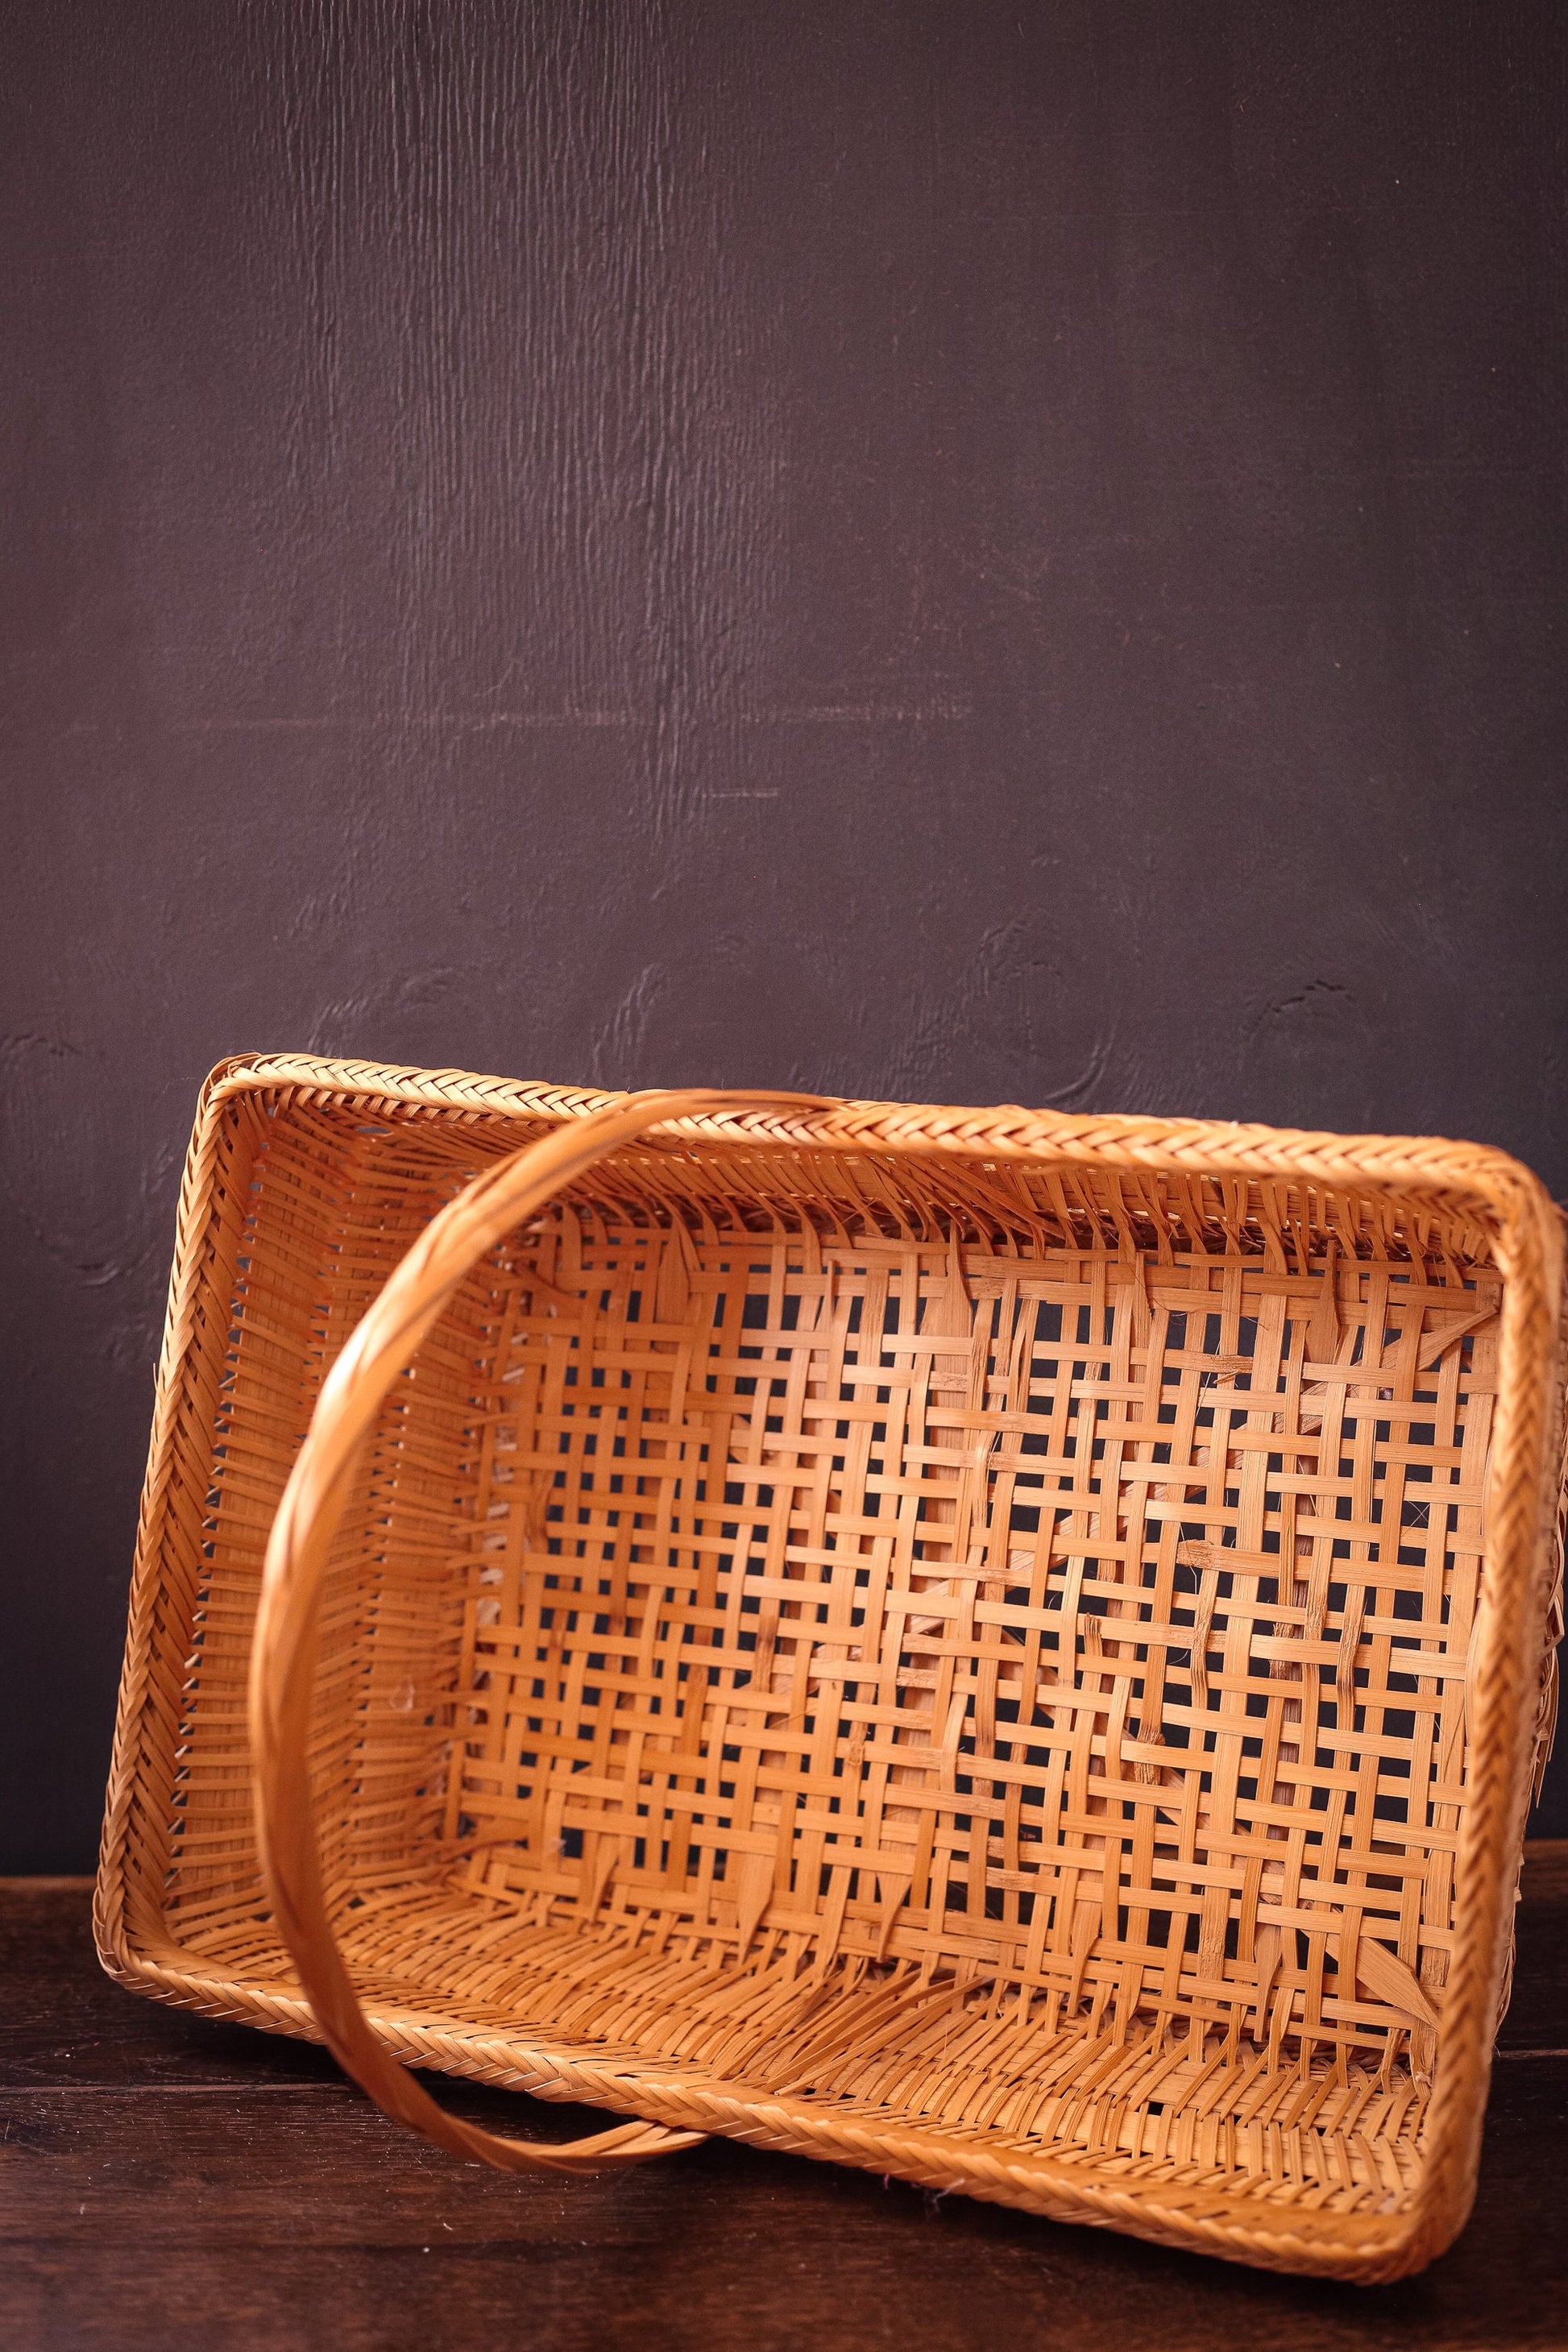 Fine Wicker Rectangle Flat Bottom Gathering Basket with Handle - Vintage Rattan Harvest Basket